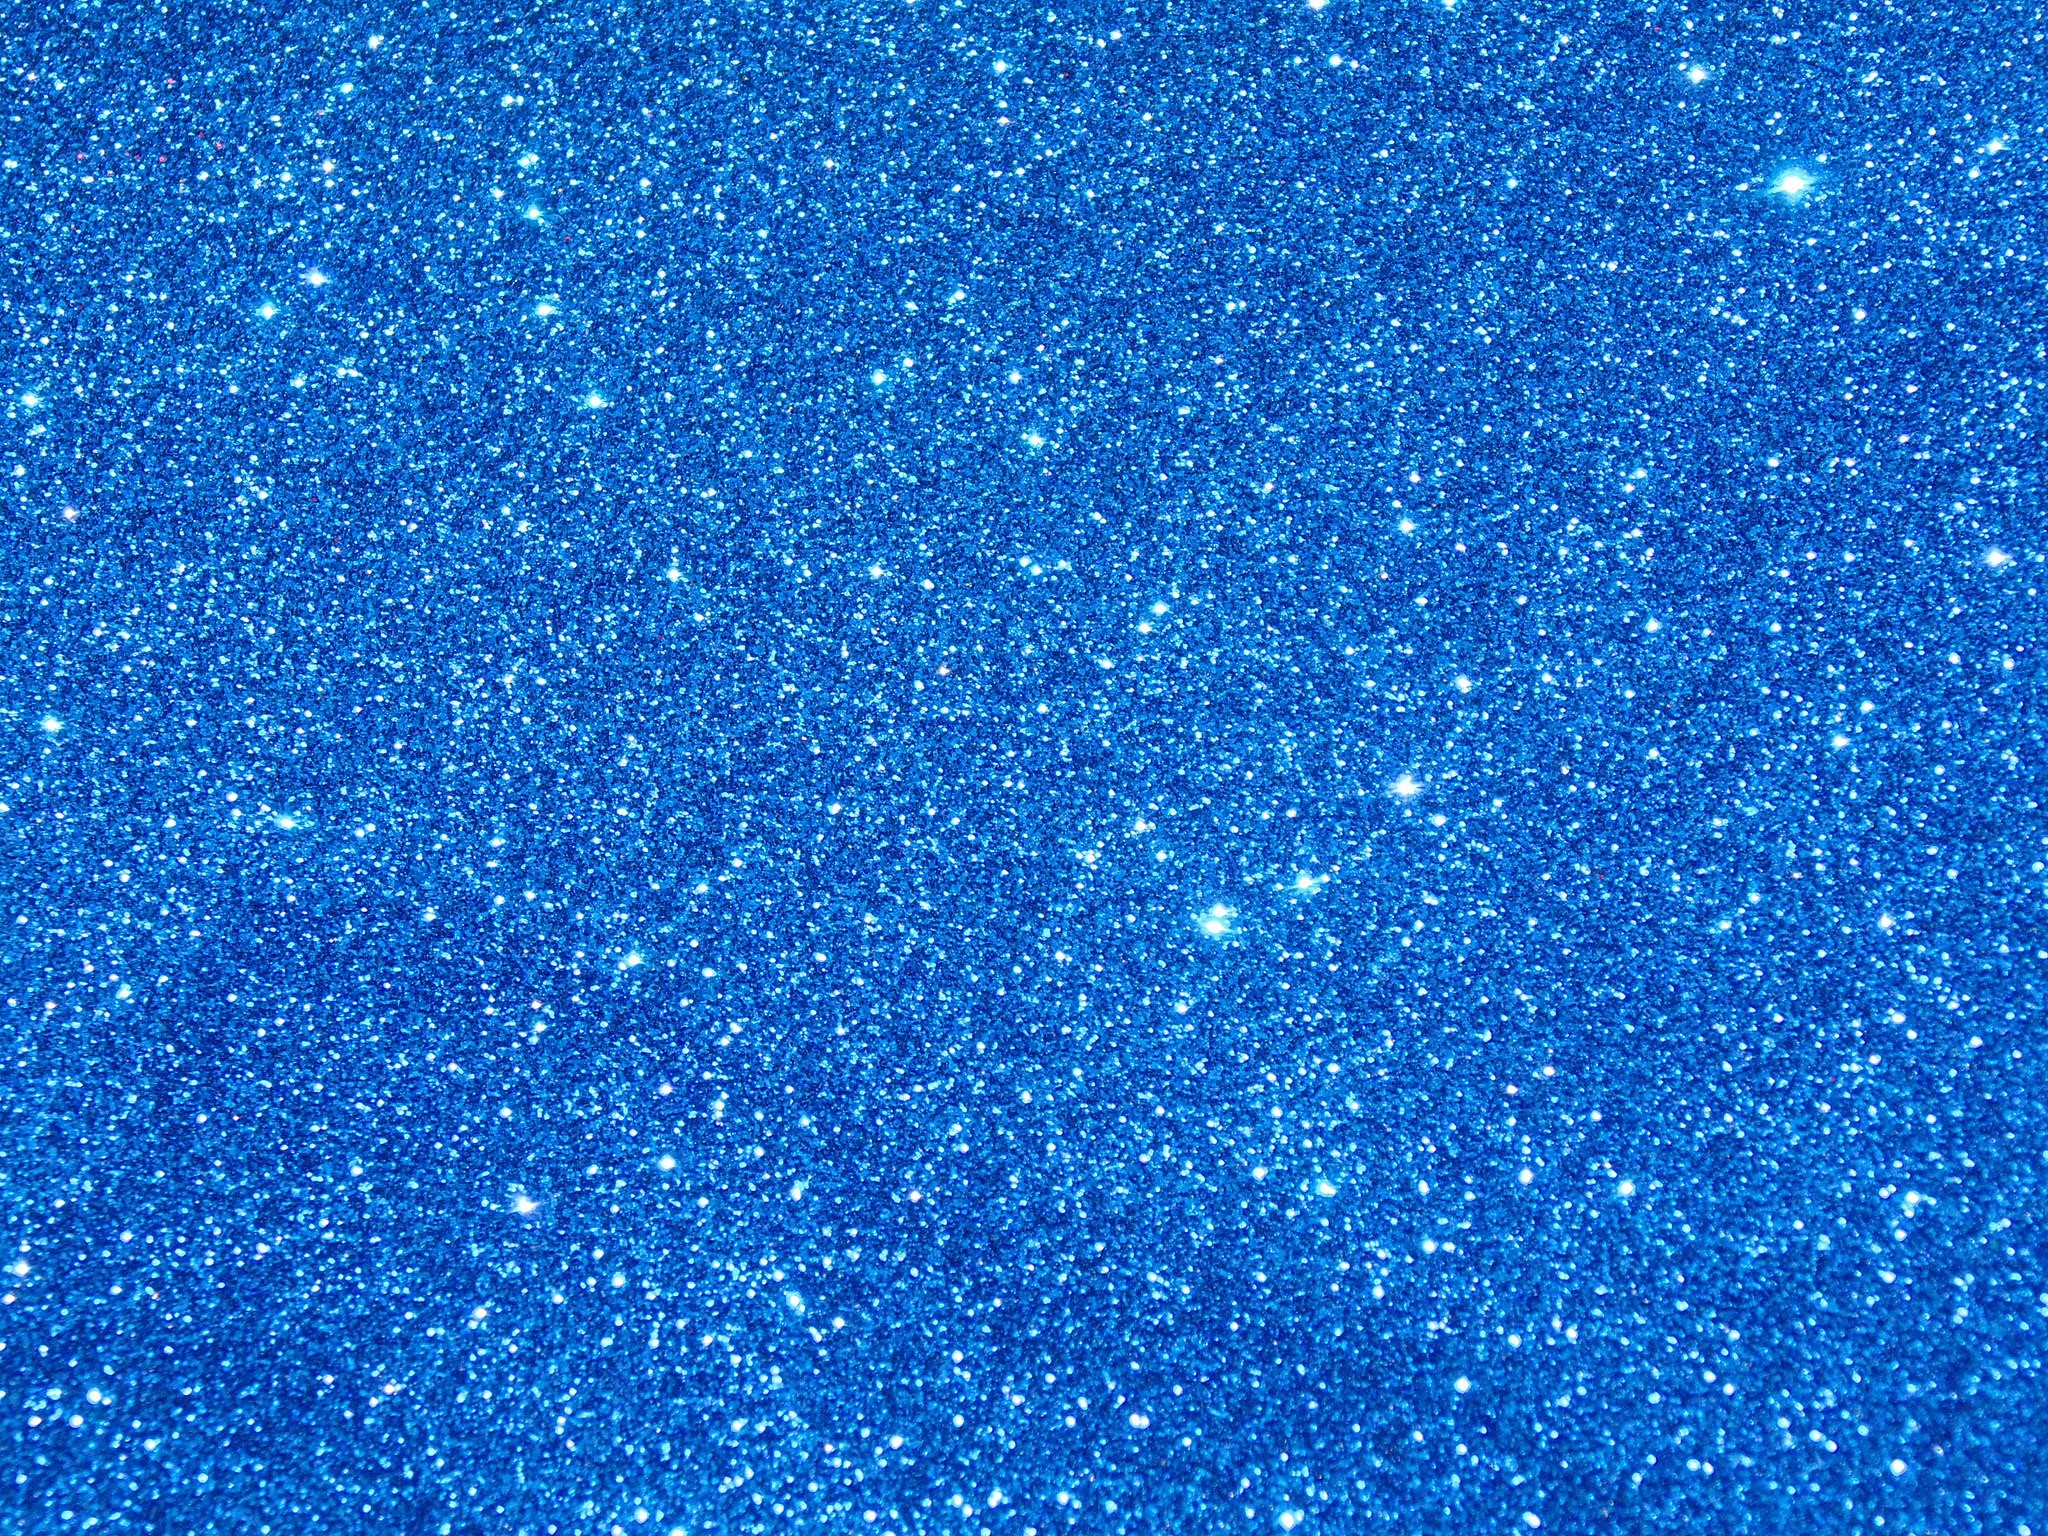 eletragesi: Blue Flowers Tumblr Background Images